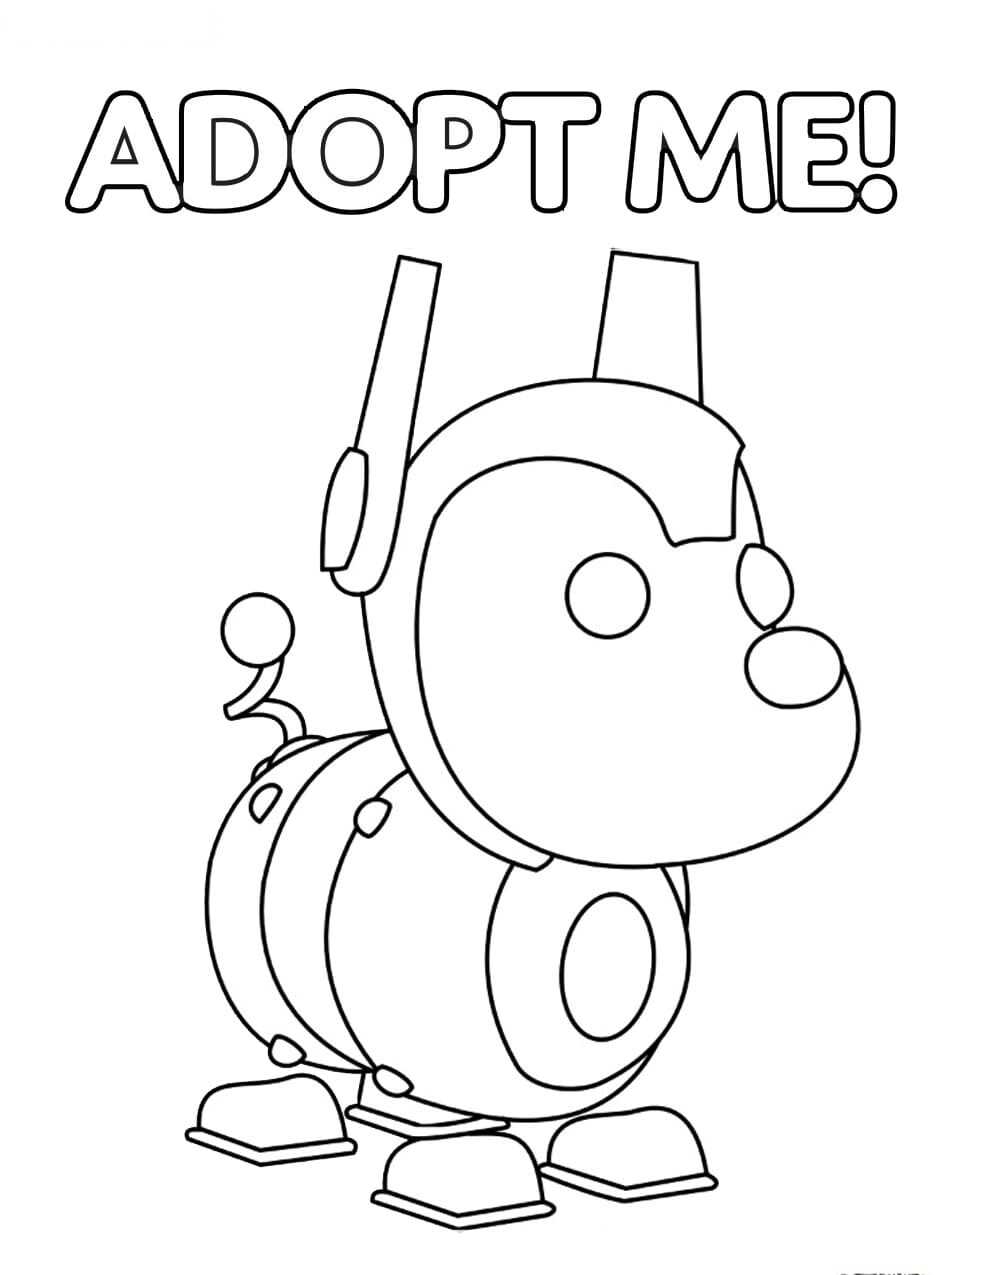 الكلب الميكانيكي المسمى Robo Dog من Adopt me from Adopt me